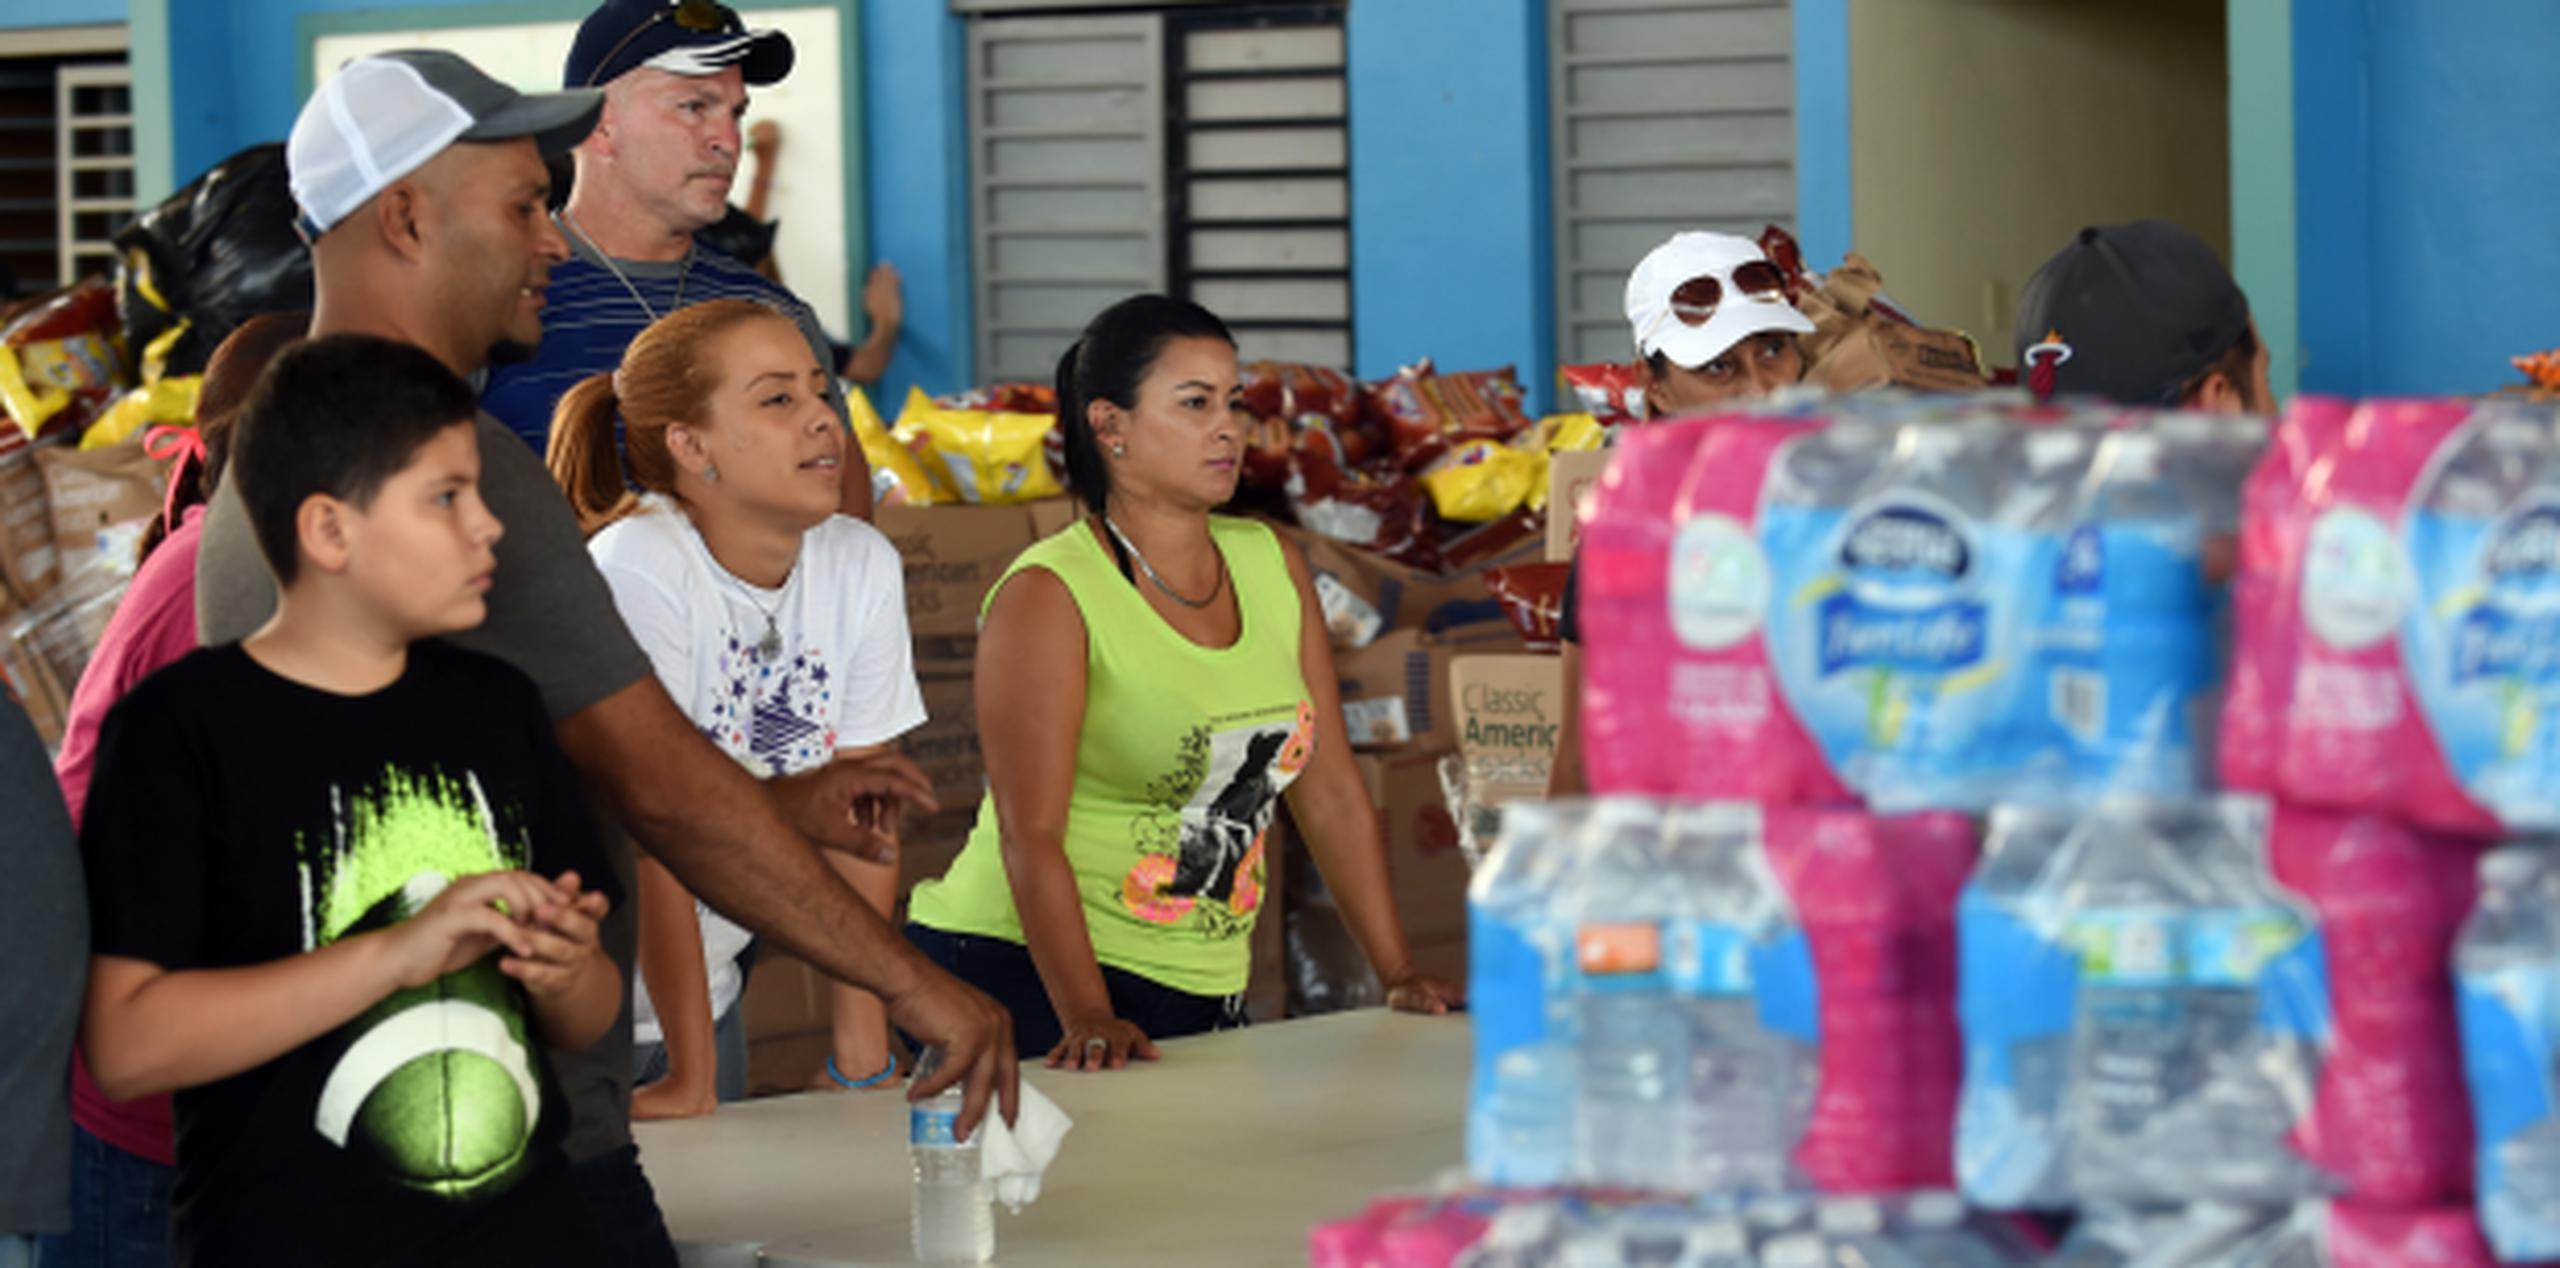 Es la que dan muchas personas, como estos adultos y jóvenes en el Banco de Alimentos establecido en Manatí, para los damnificados por el huracán María. (andre.kang@gfrmedia.com)